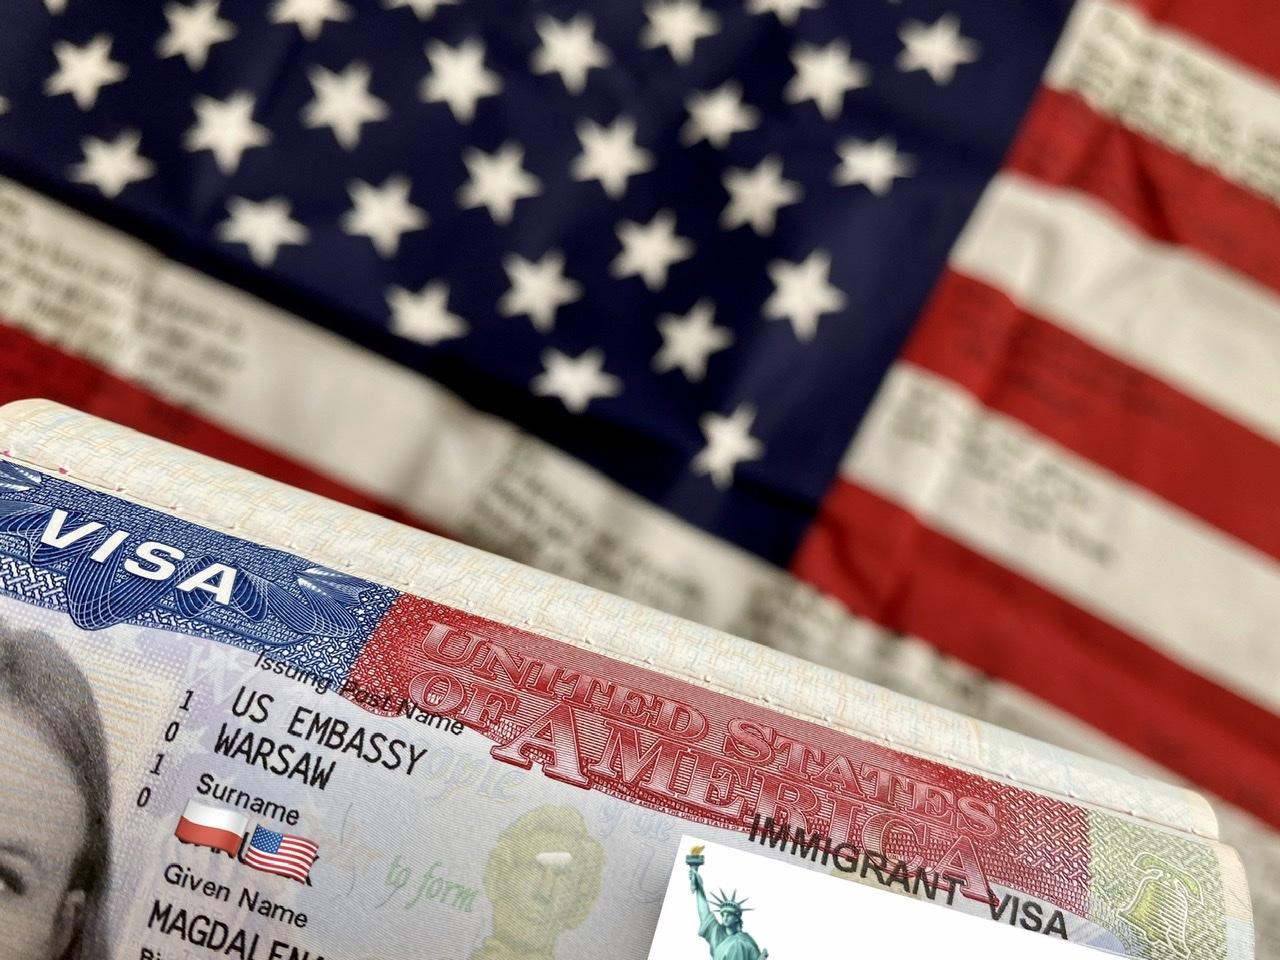 MVGDALENA: Zostałam wylosowana w loterii wizowej! I co dalej? Wyprowadzam się do USA?